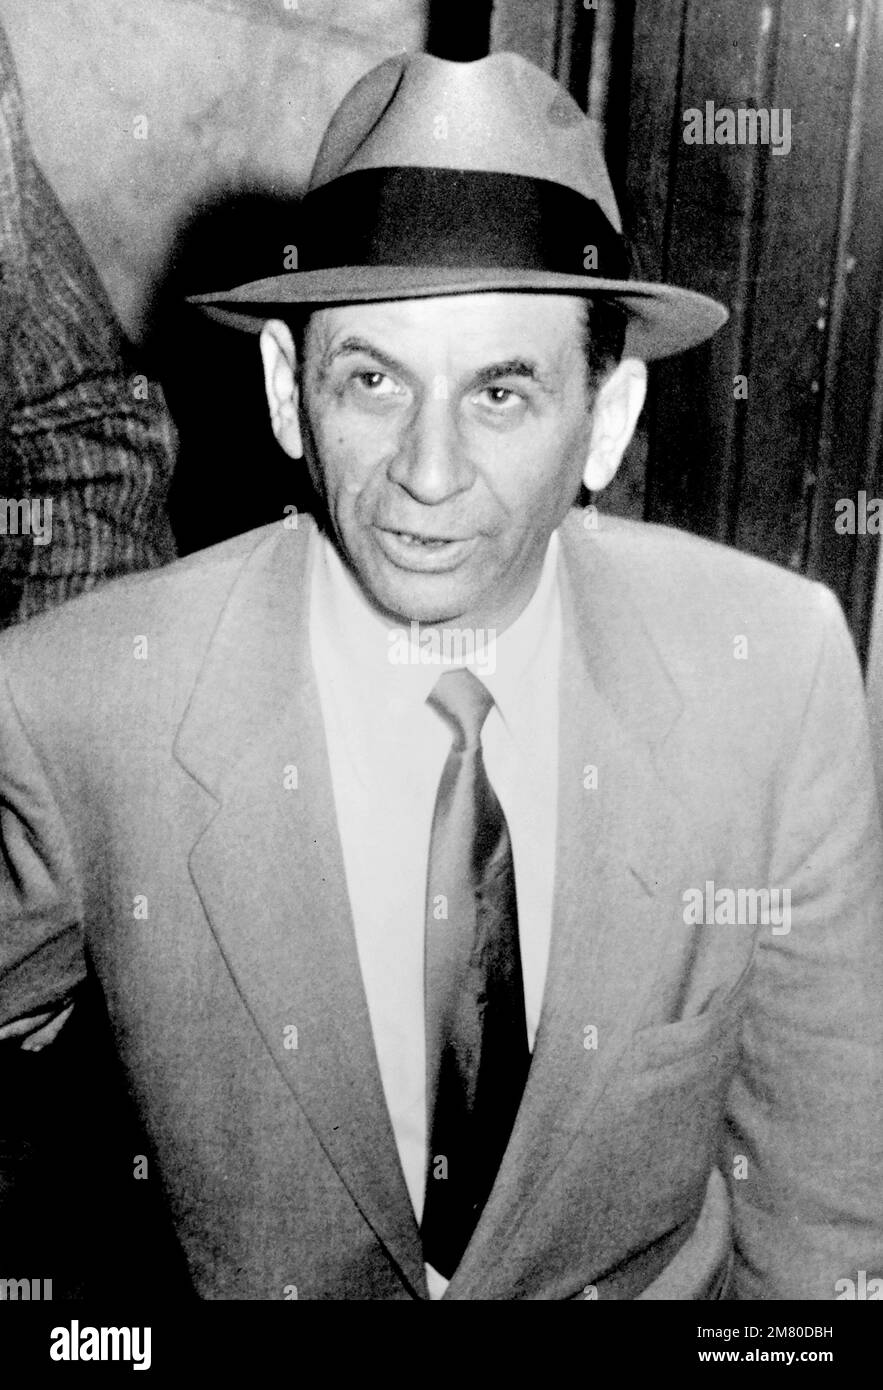 Meyer Lansky. Foto der amerikanischen Figur des organisierten Verbrechens mit dem Spitznamen "Mobs Accountaint", Meyer Lansky (geb. Maier Suchowljansky, 1902-1983) von Orlando Fernandez, 1958 Stockfoto